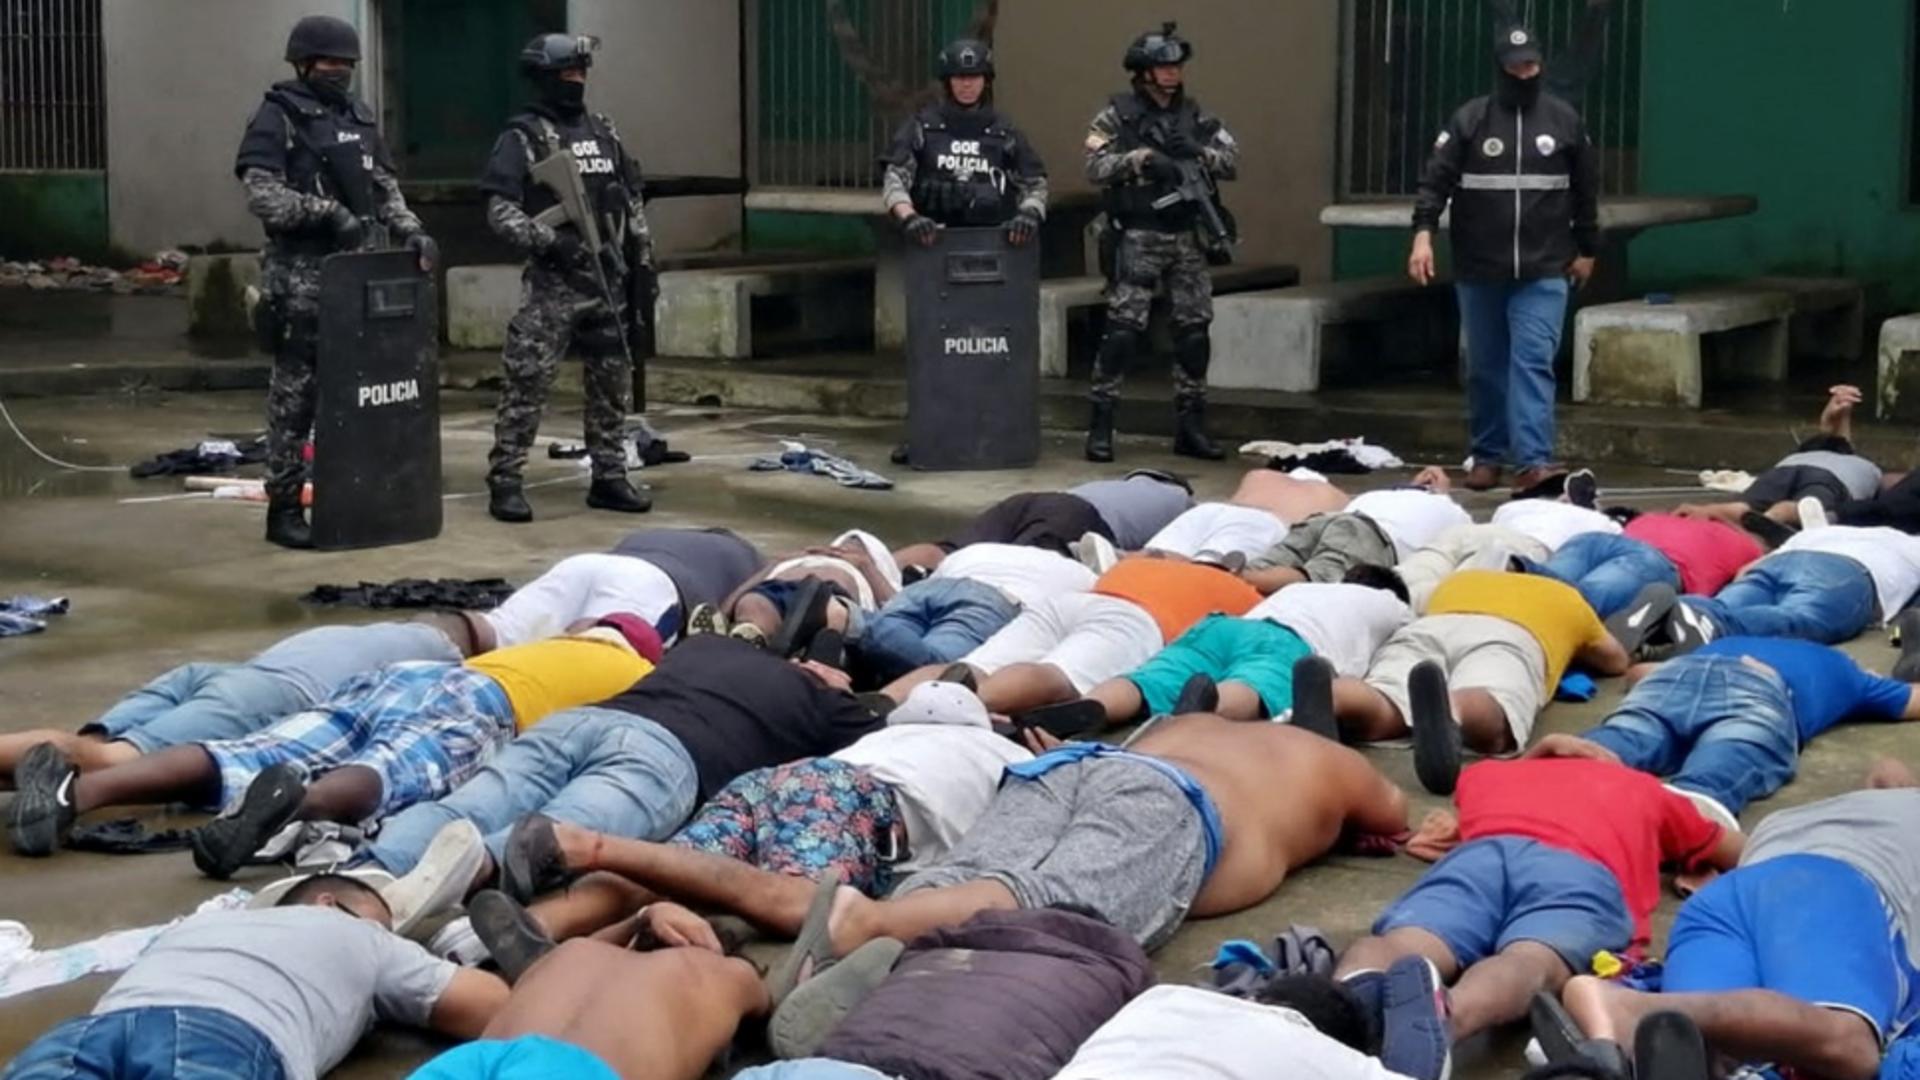 Război între bandele rivale, într-o închisoare din Ecuador. Foto/Profimedia